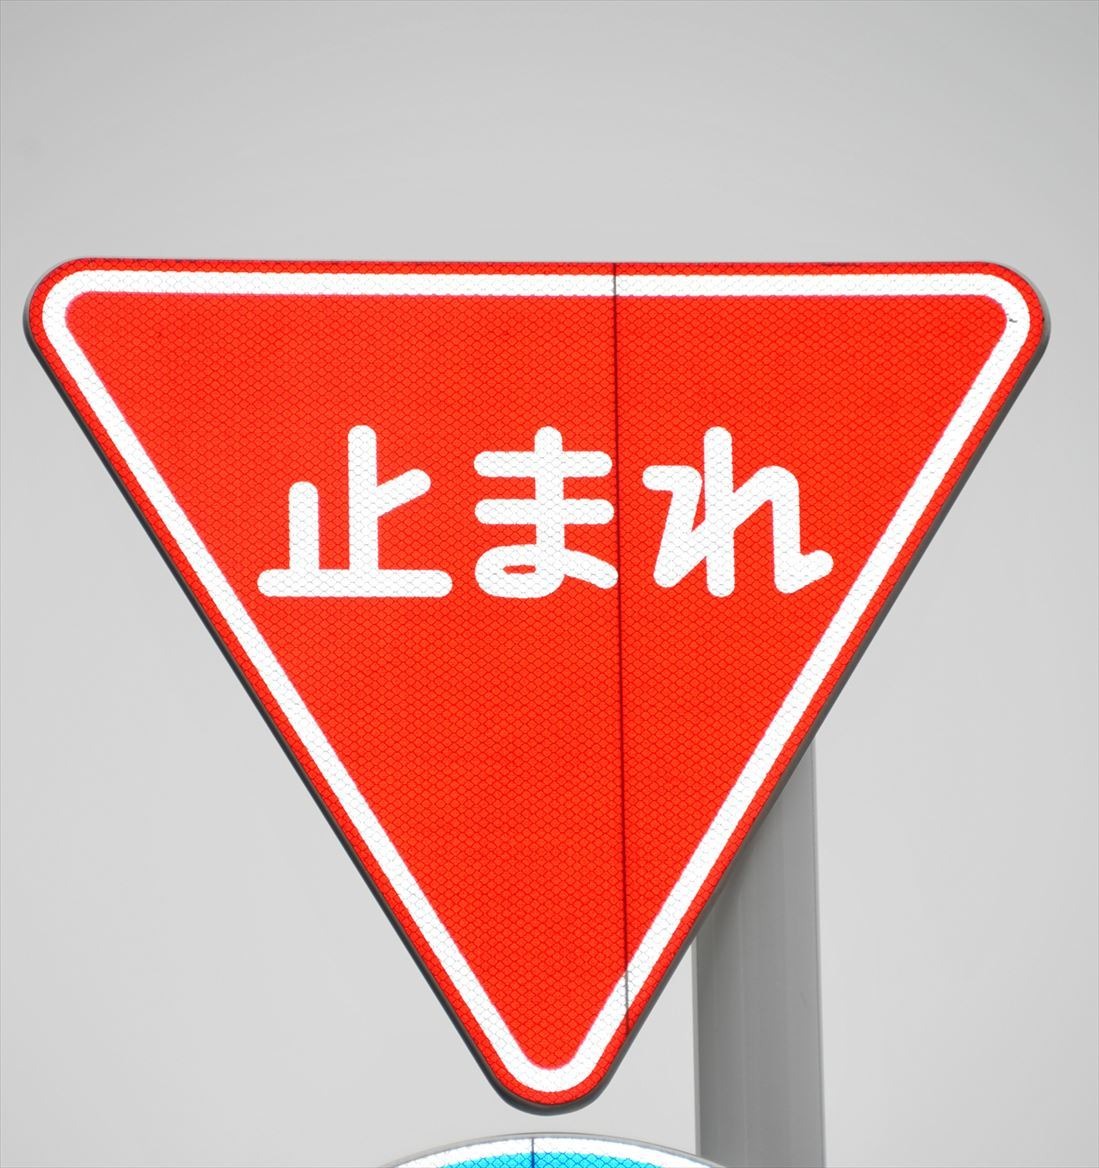 その規制標識は本物か 滋賀県警 県内の全標識確認へ レスポンス Response Jp